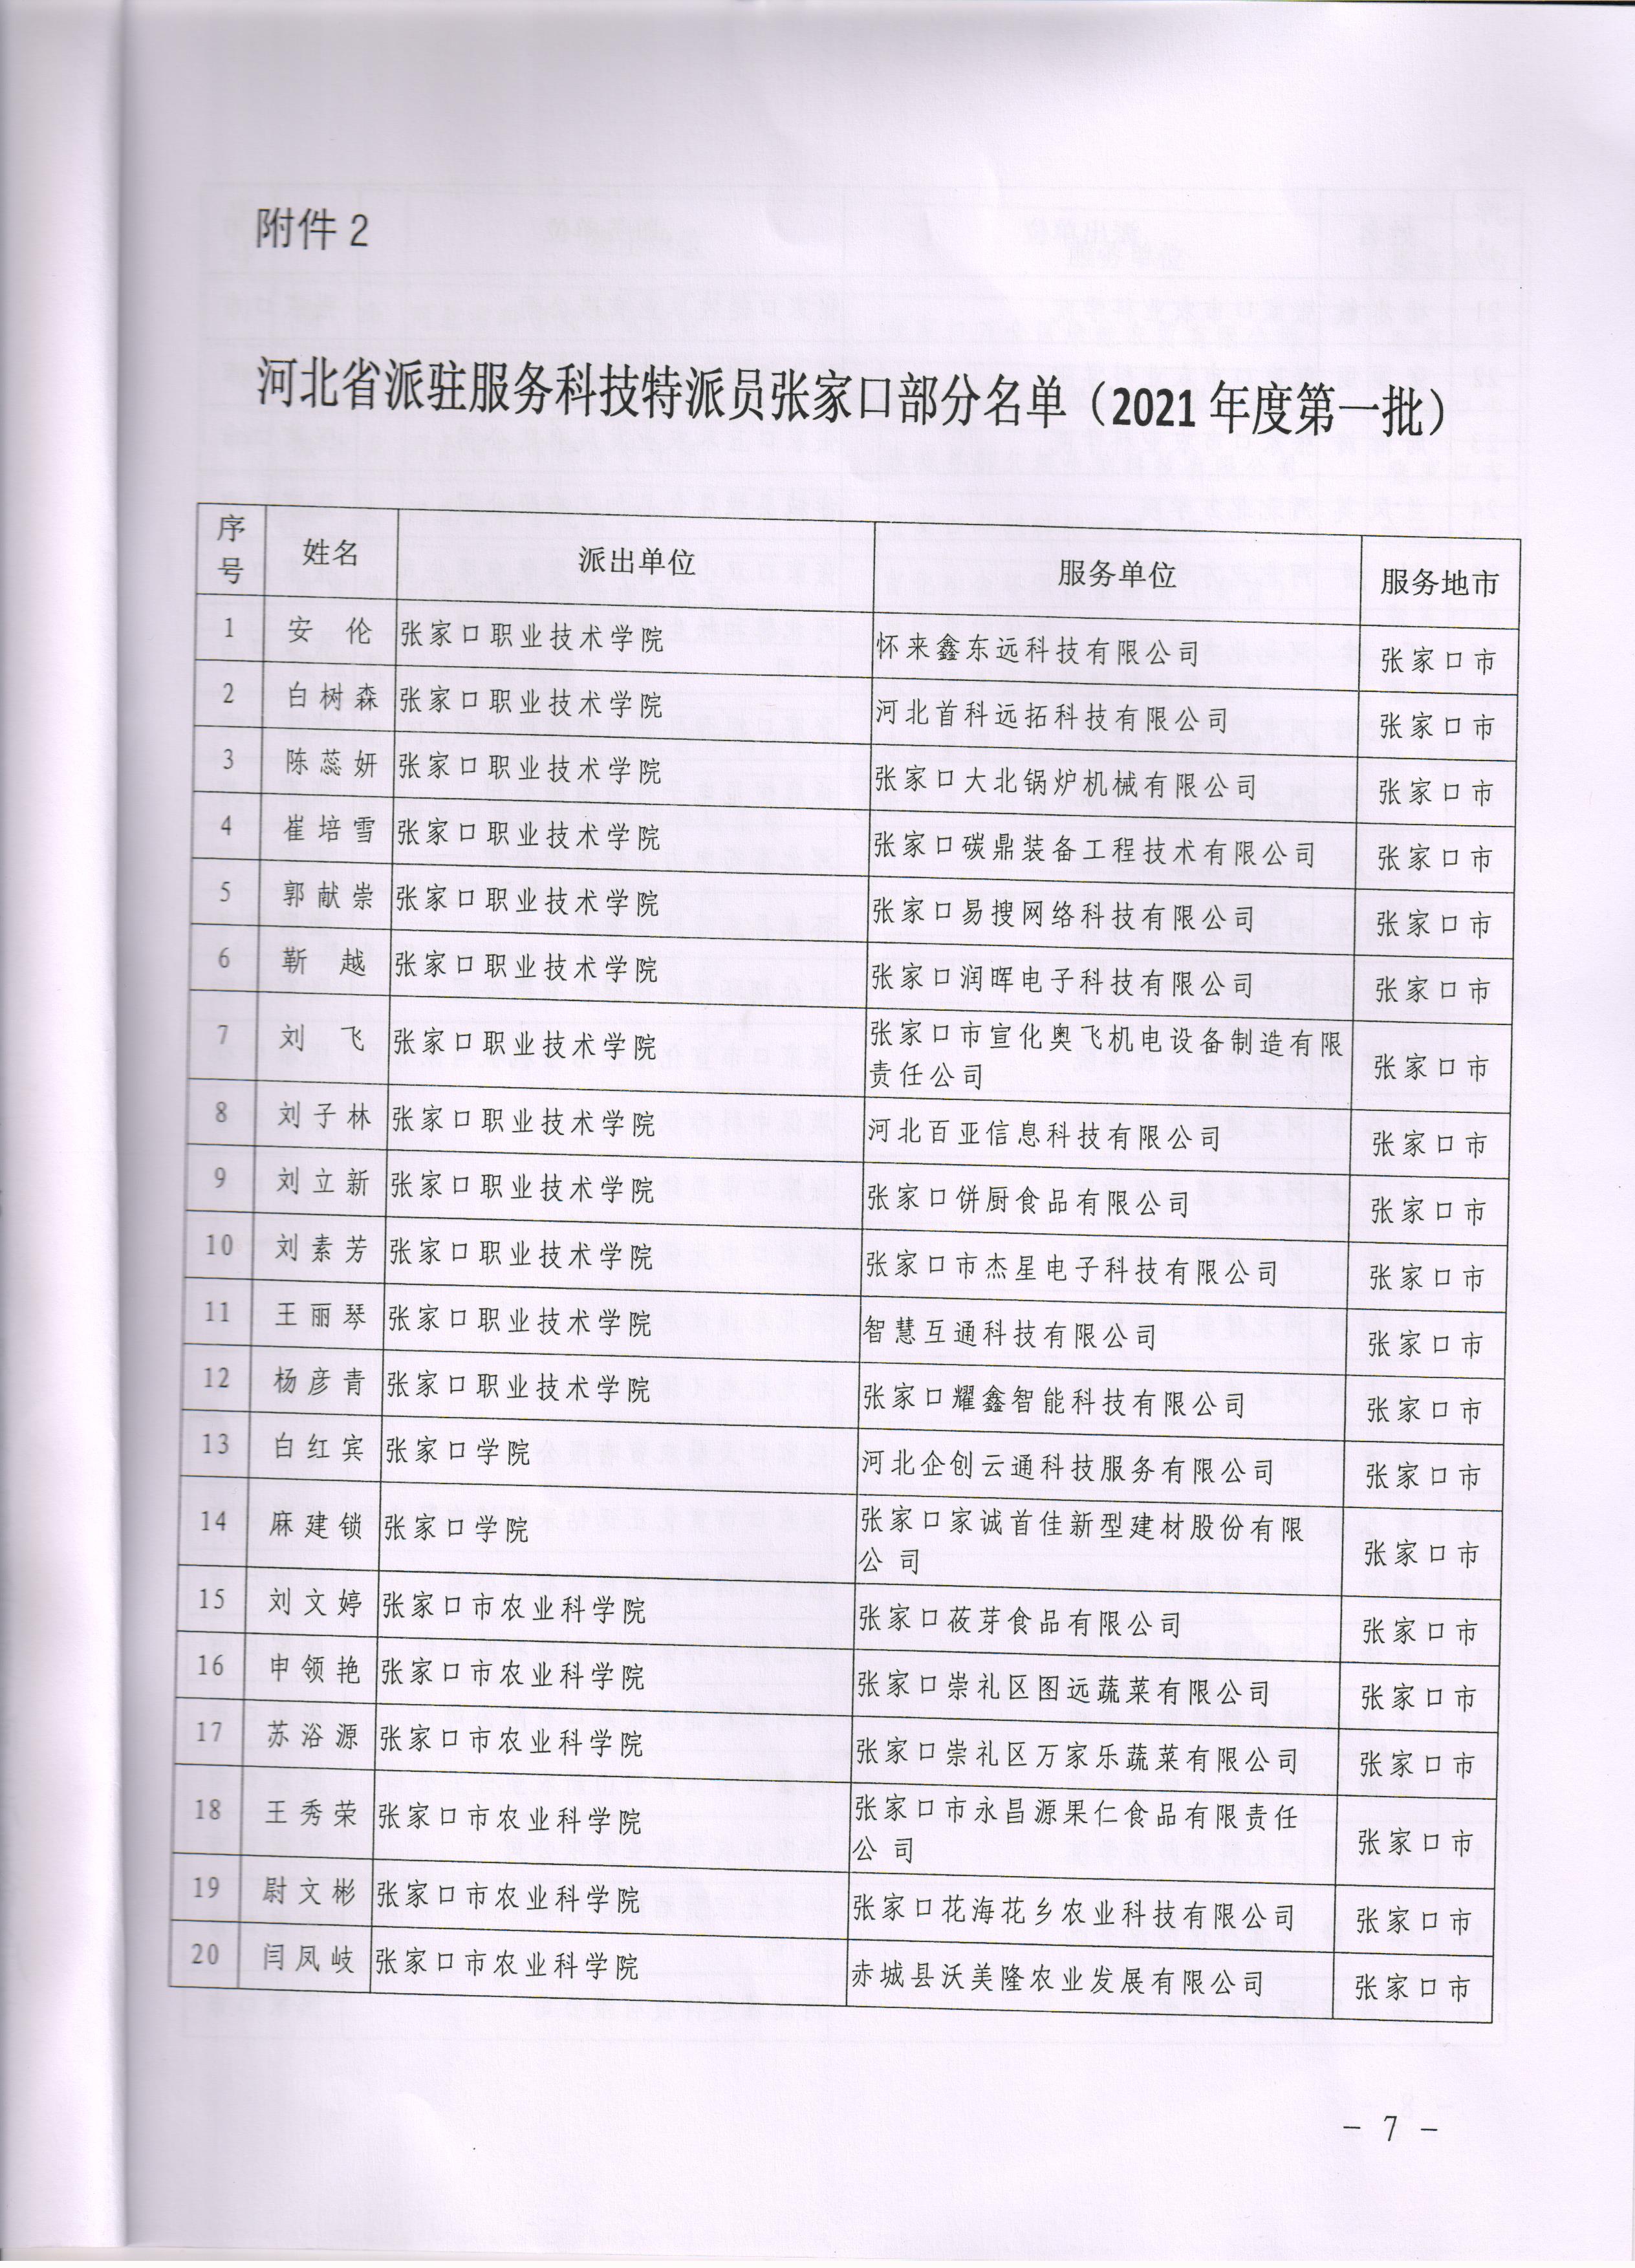 我院18名教师获批河北省科技特派员备案